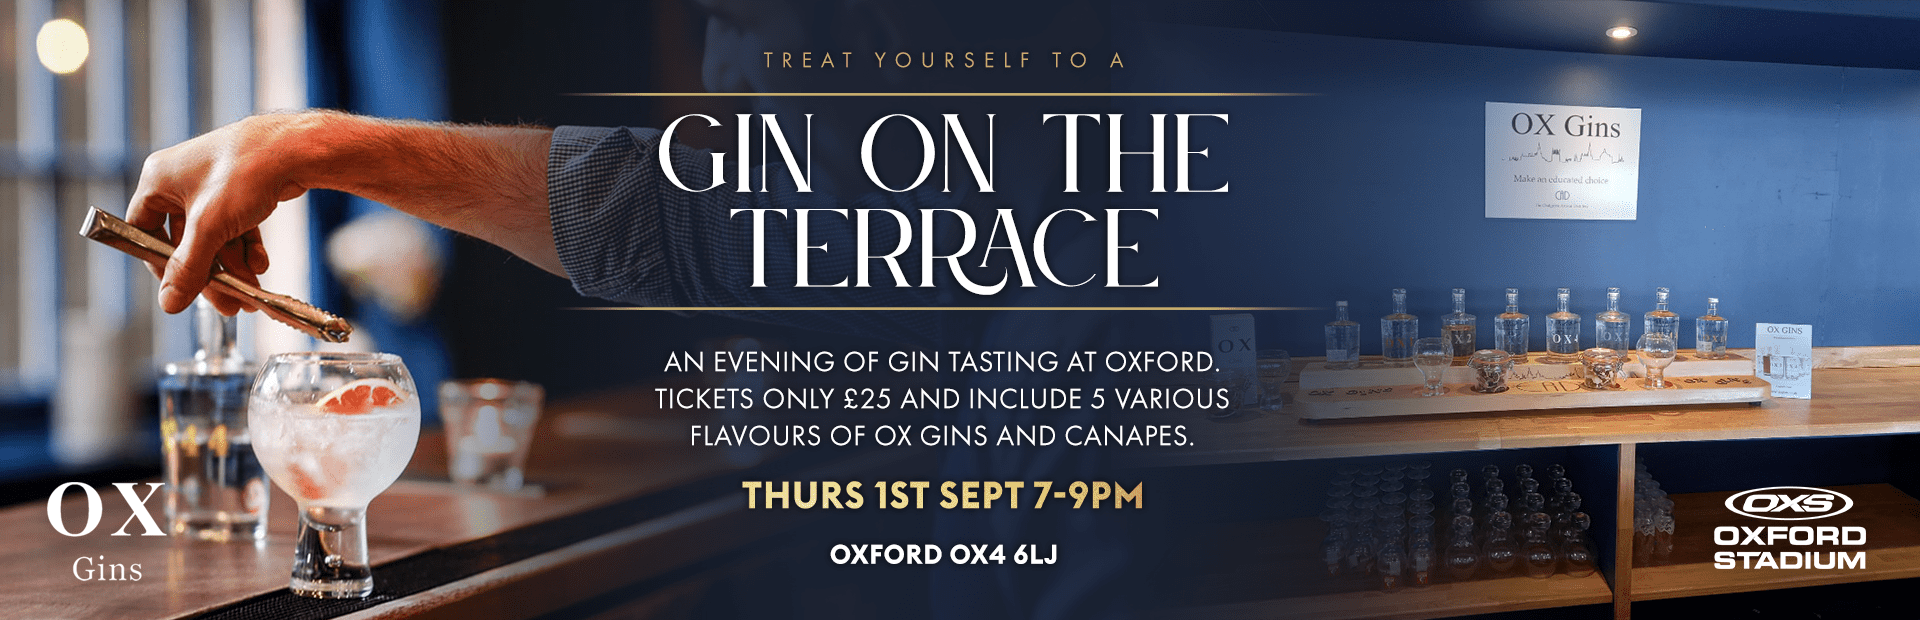 ox gin bar event 2